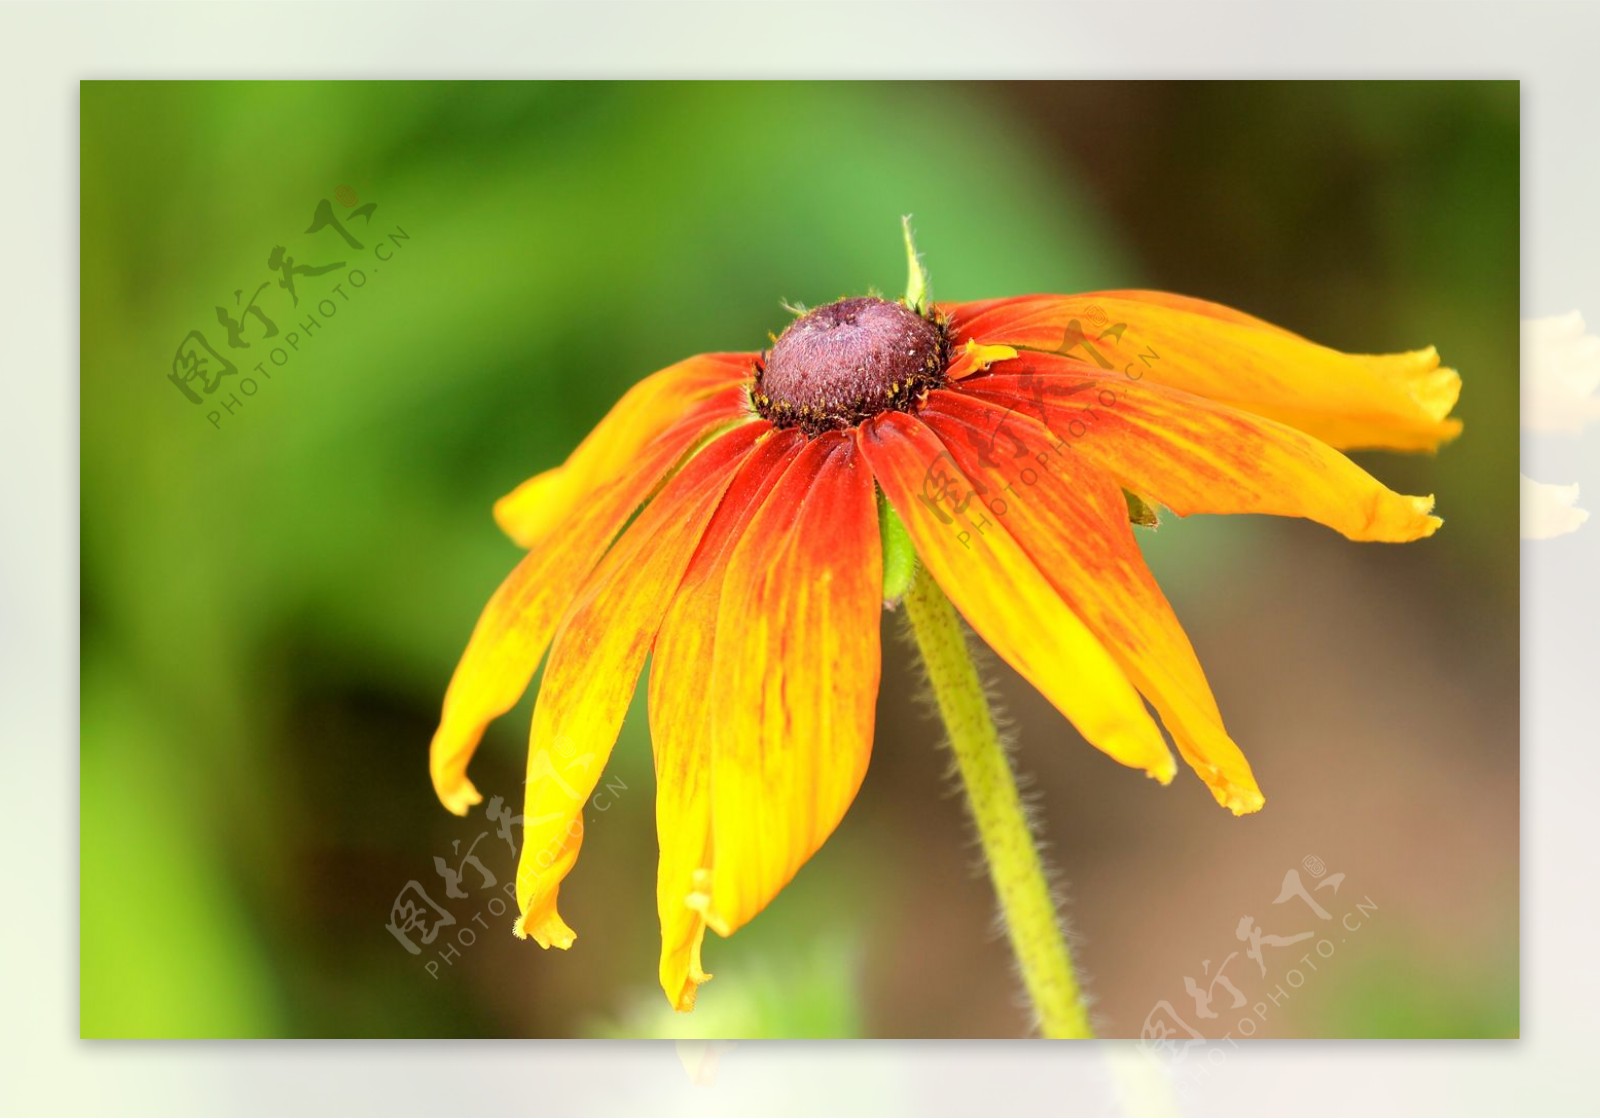 位图植物摄影写实花卉花朵菊花免费素材